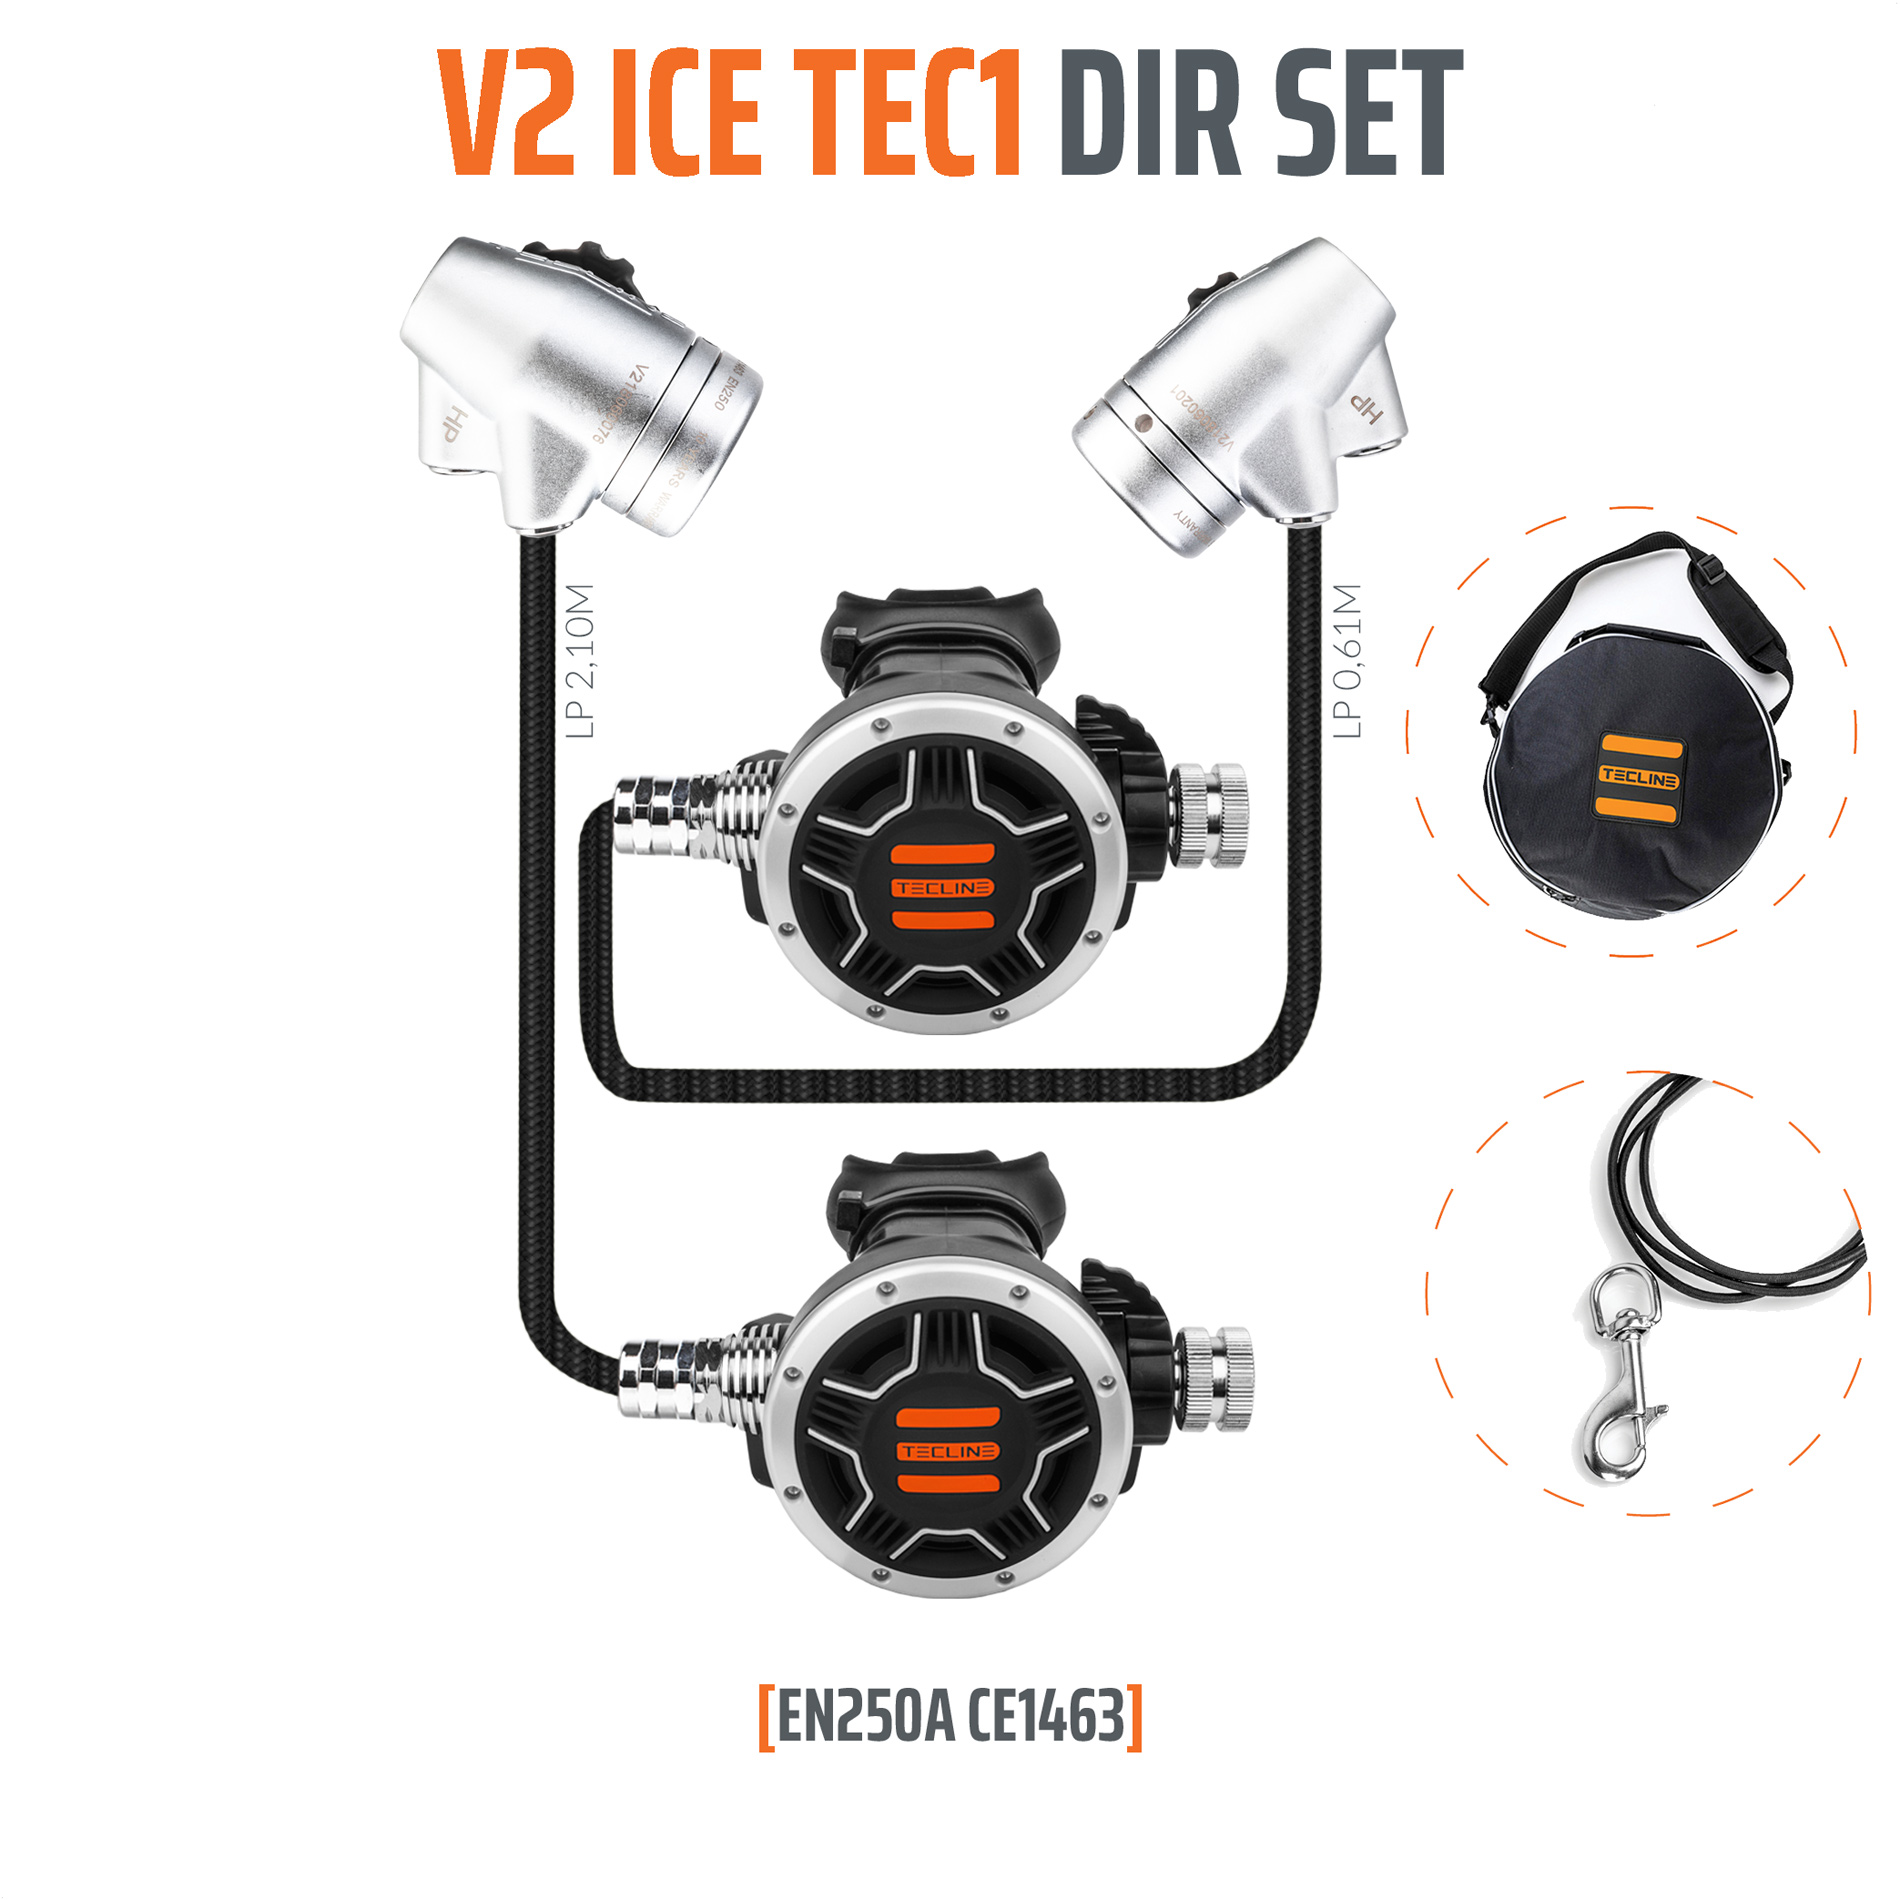 Tecline Regulator V2 ICE TEC1 DIR Set - EN250A